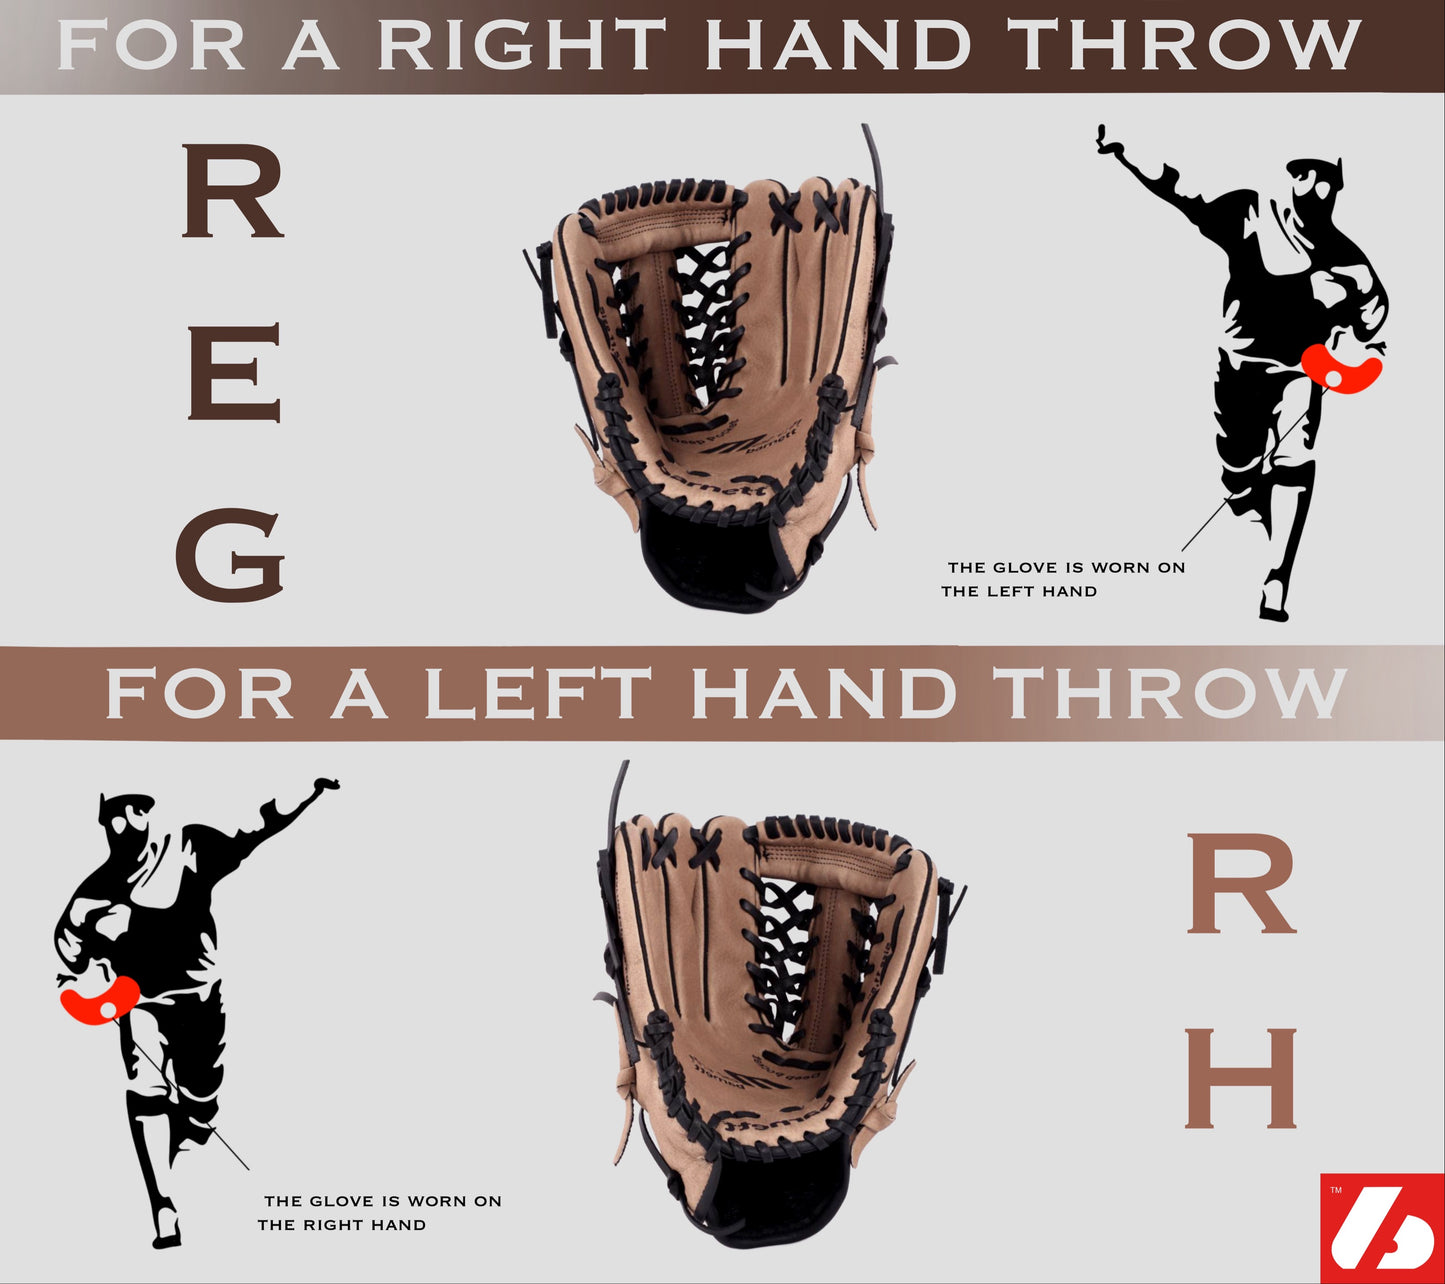 GL-130 Baseball Handschuh, Echtleder, Wettkampf, Outfield & Softball Größe 13 (inch), schwarz